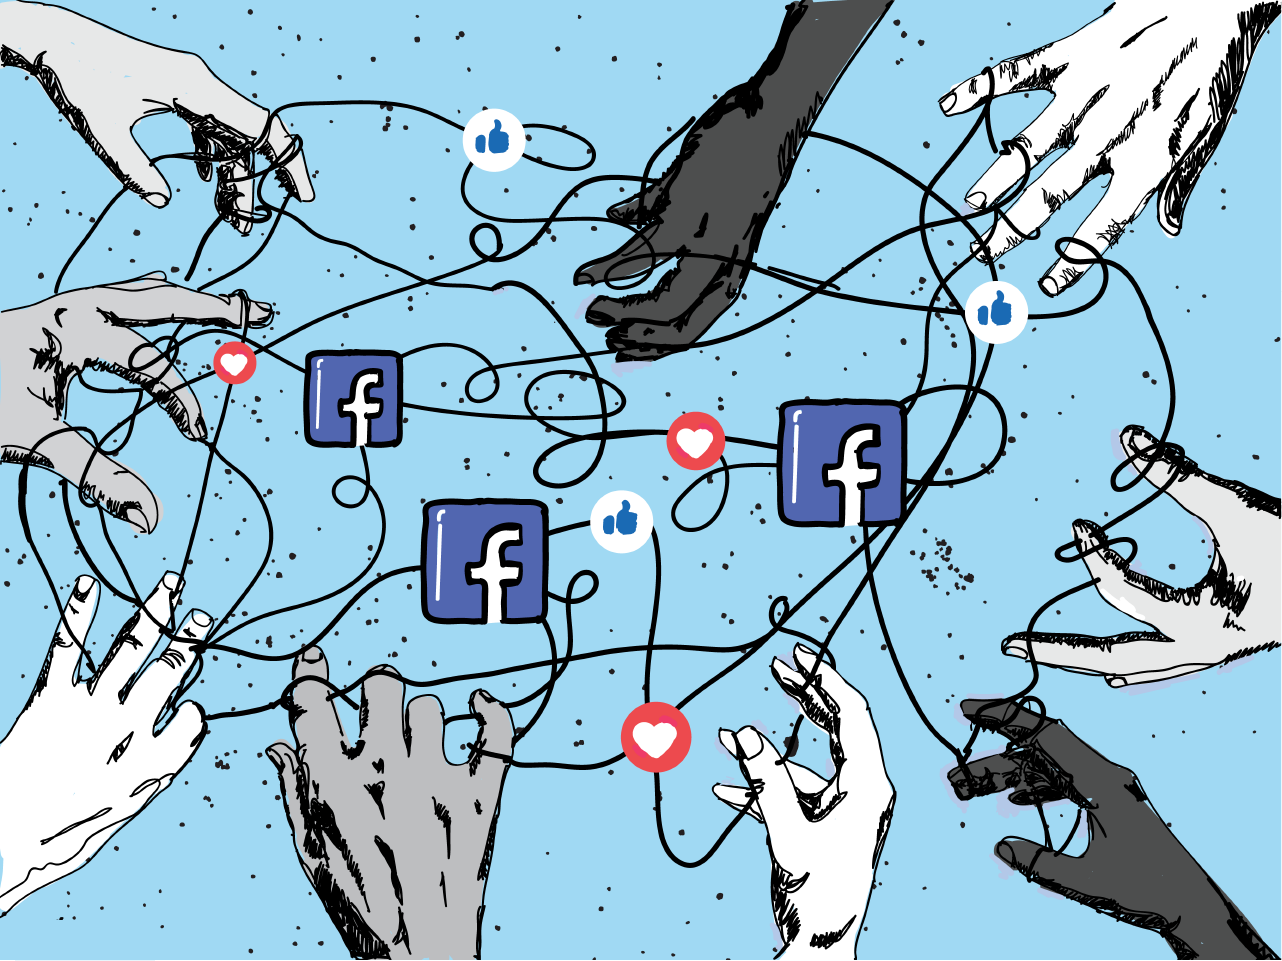 Com dinheiro e decisões arbitrárias, Facebook tenta consolidar marca Meta